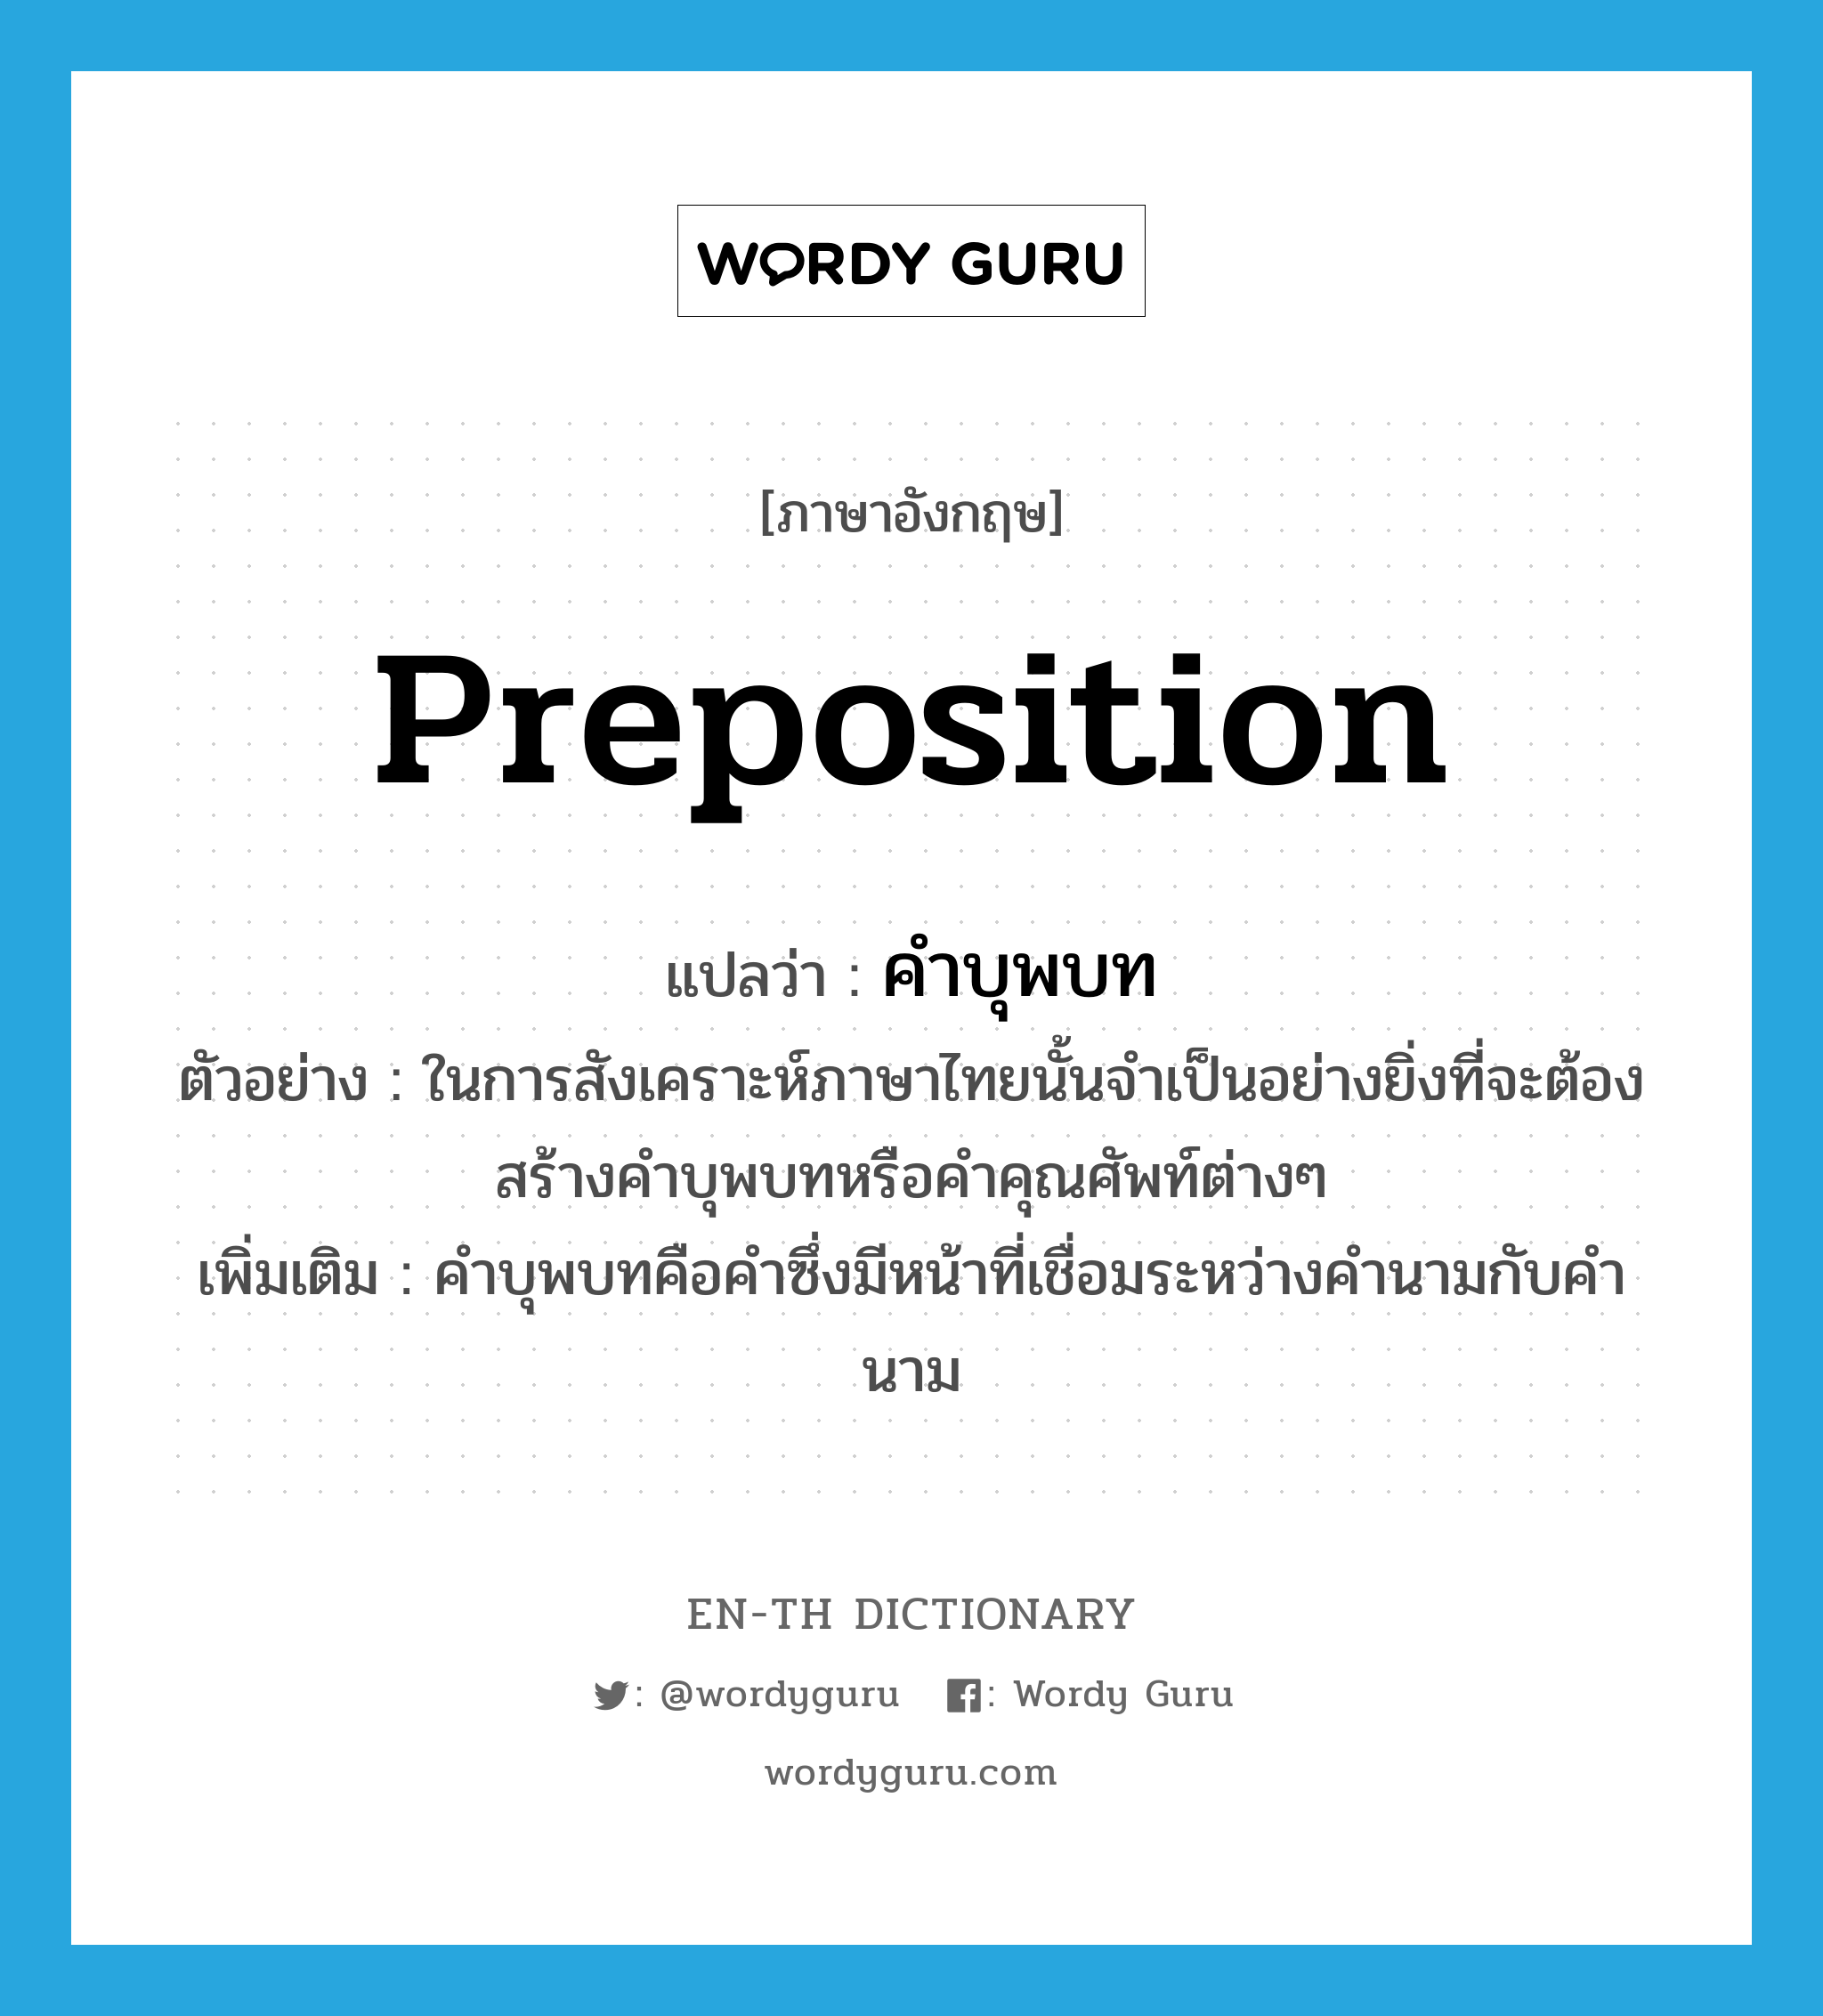 คำบุพบท ภาษาอังกฤษ?, คำศัพท์ภาษาอังกฤษ คำบุพบท แปลว่า preposition ประเภท N ตัวอย่าง ในการสังเคราะห์ภาษาไทยนั้นจำเป็นอย่างยิ่งที่จะต้องสร้างคำบุพบทหรือคำคุณศัพท์ต่างๆ เพิ่มเติม คำบุพบทคือคำซึ่งมีหน้าที่เชื่อมระหว่างคำนามกับคำนาม หมวด N